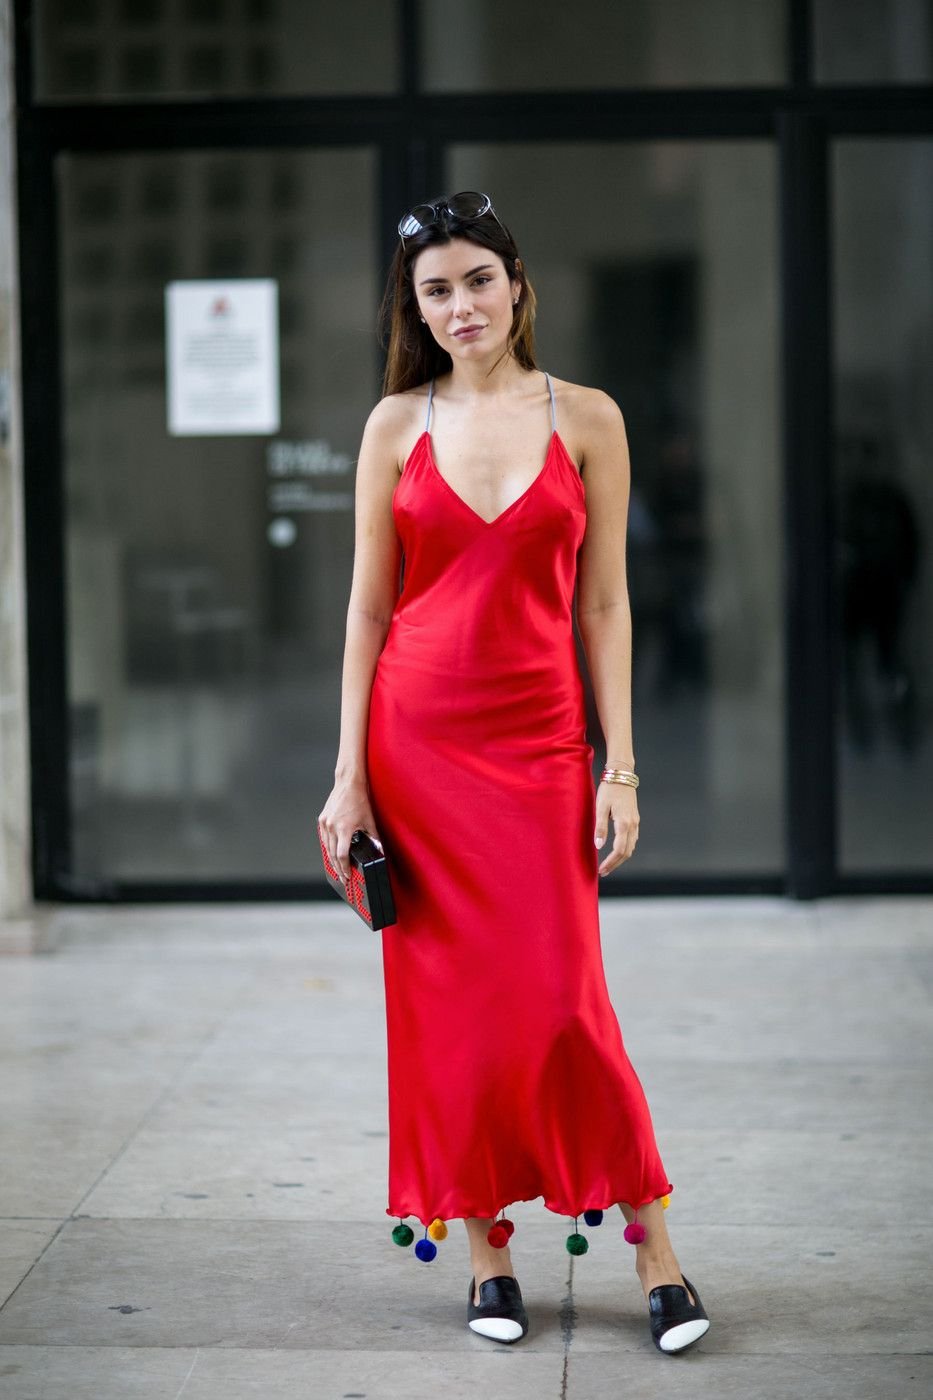 Красное платье комбинация